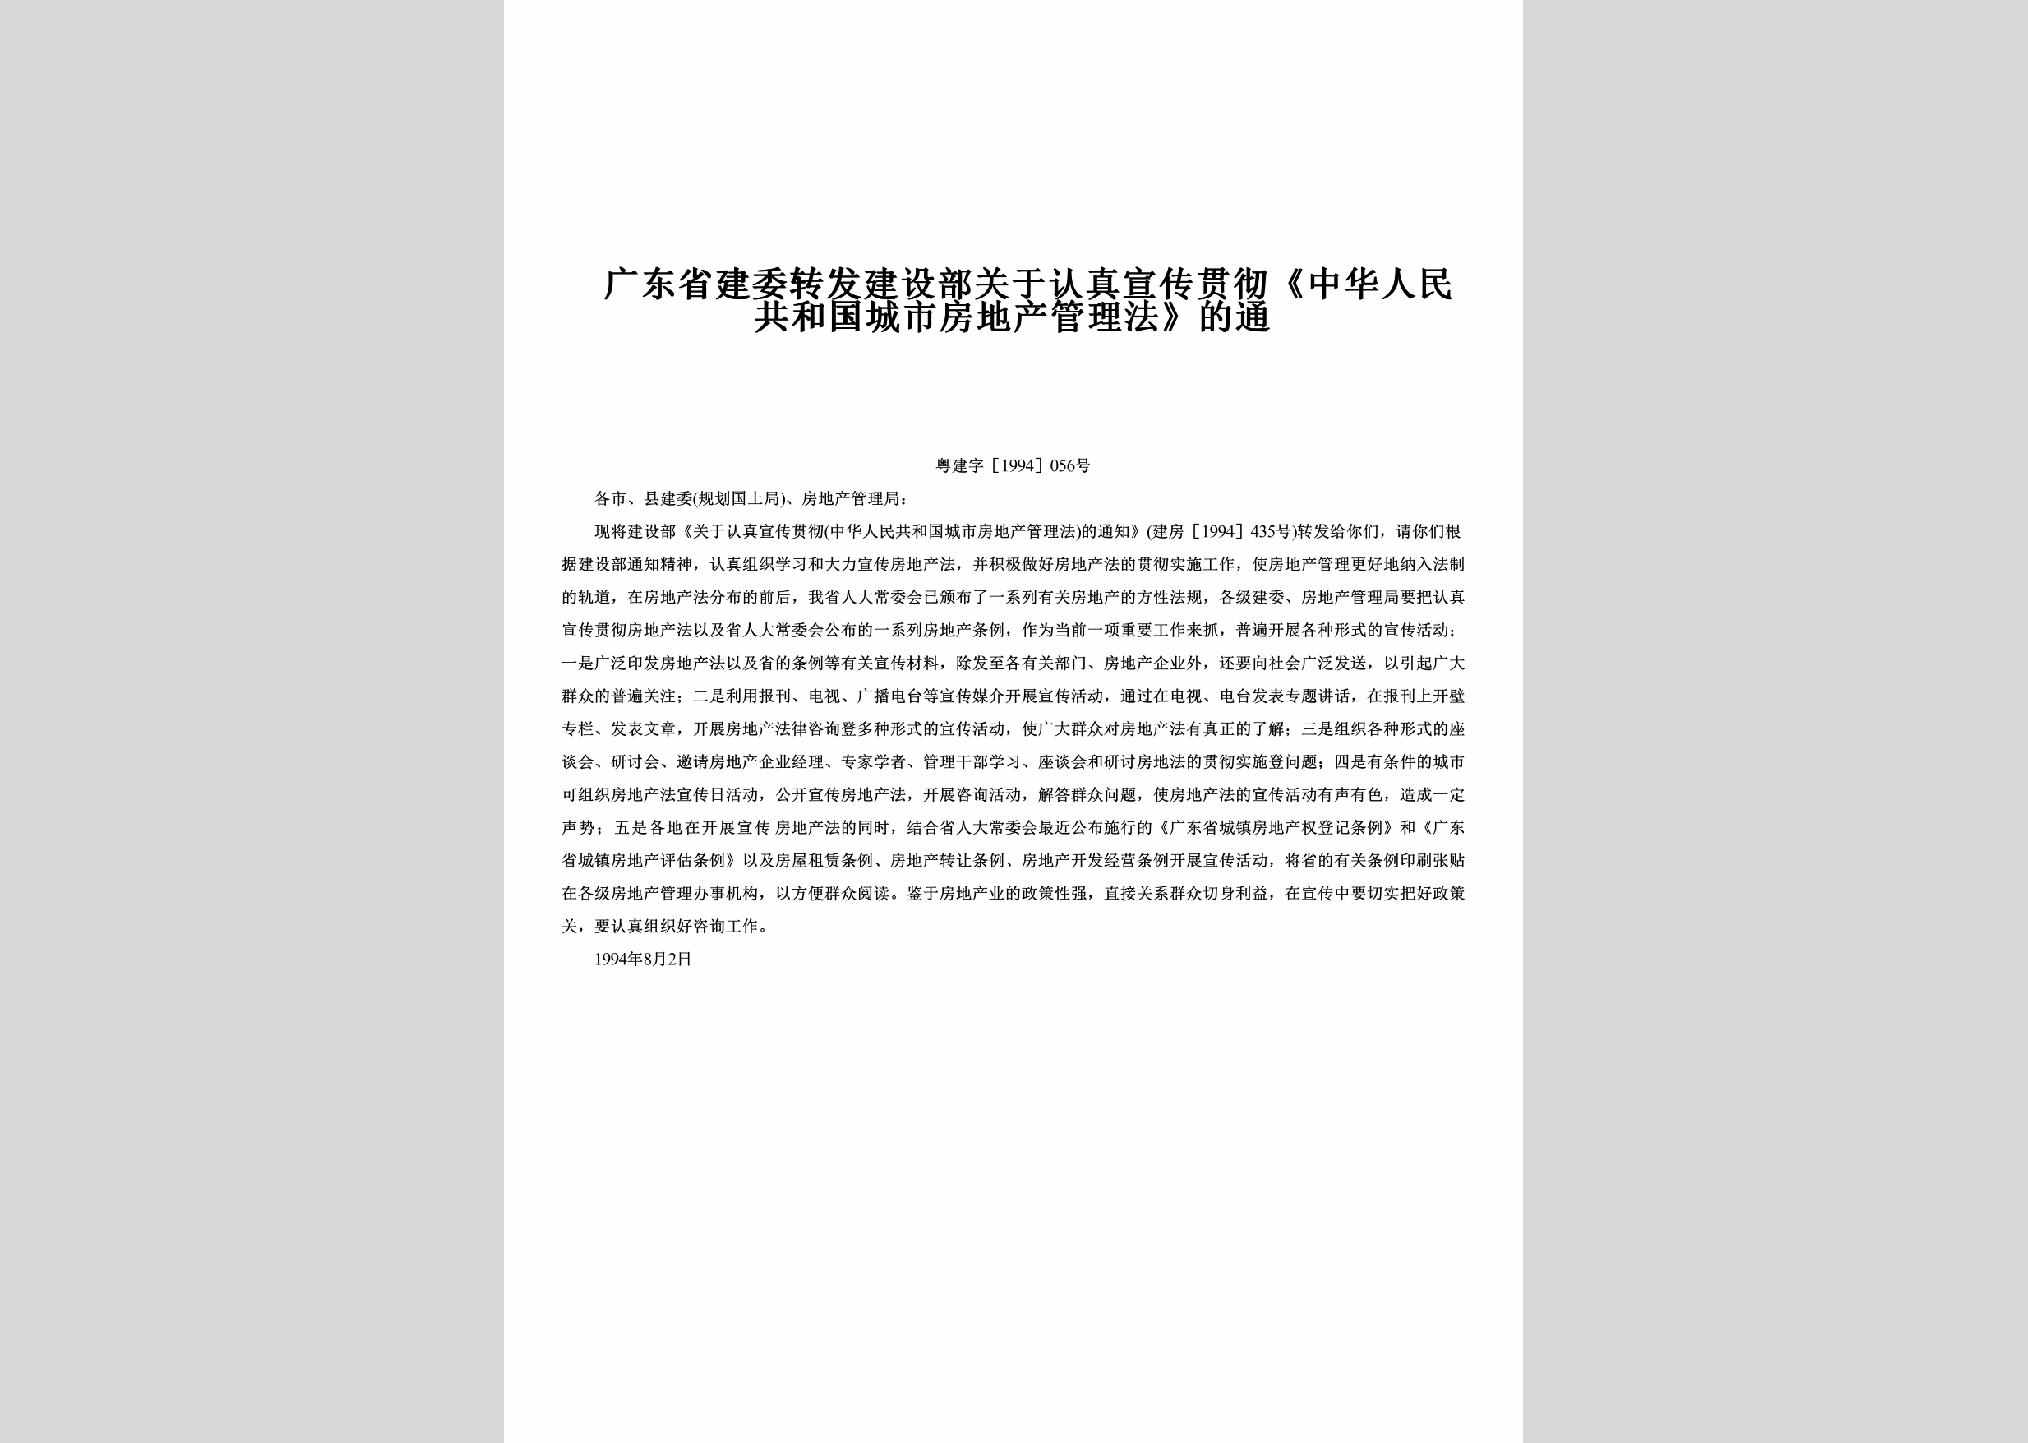 粤建字[1994]056号：转发建设部关于认真宣传贯彻《中华人民共和国城市房地产管理法》的通